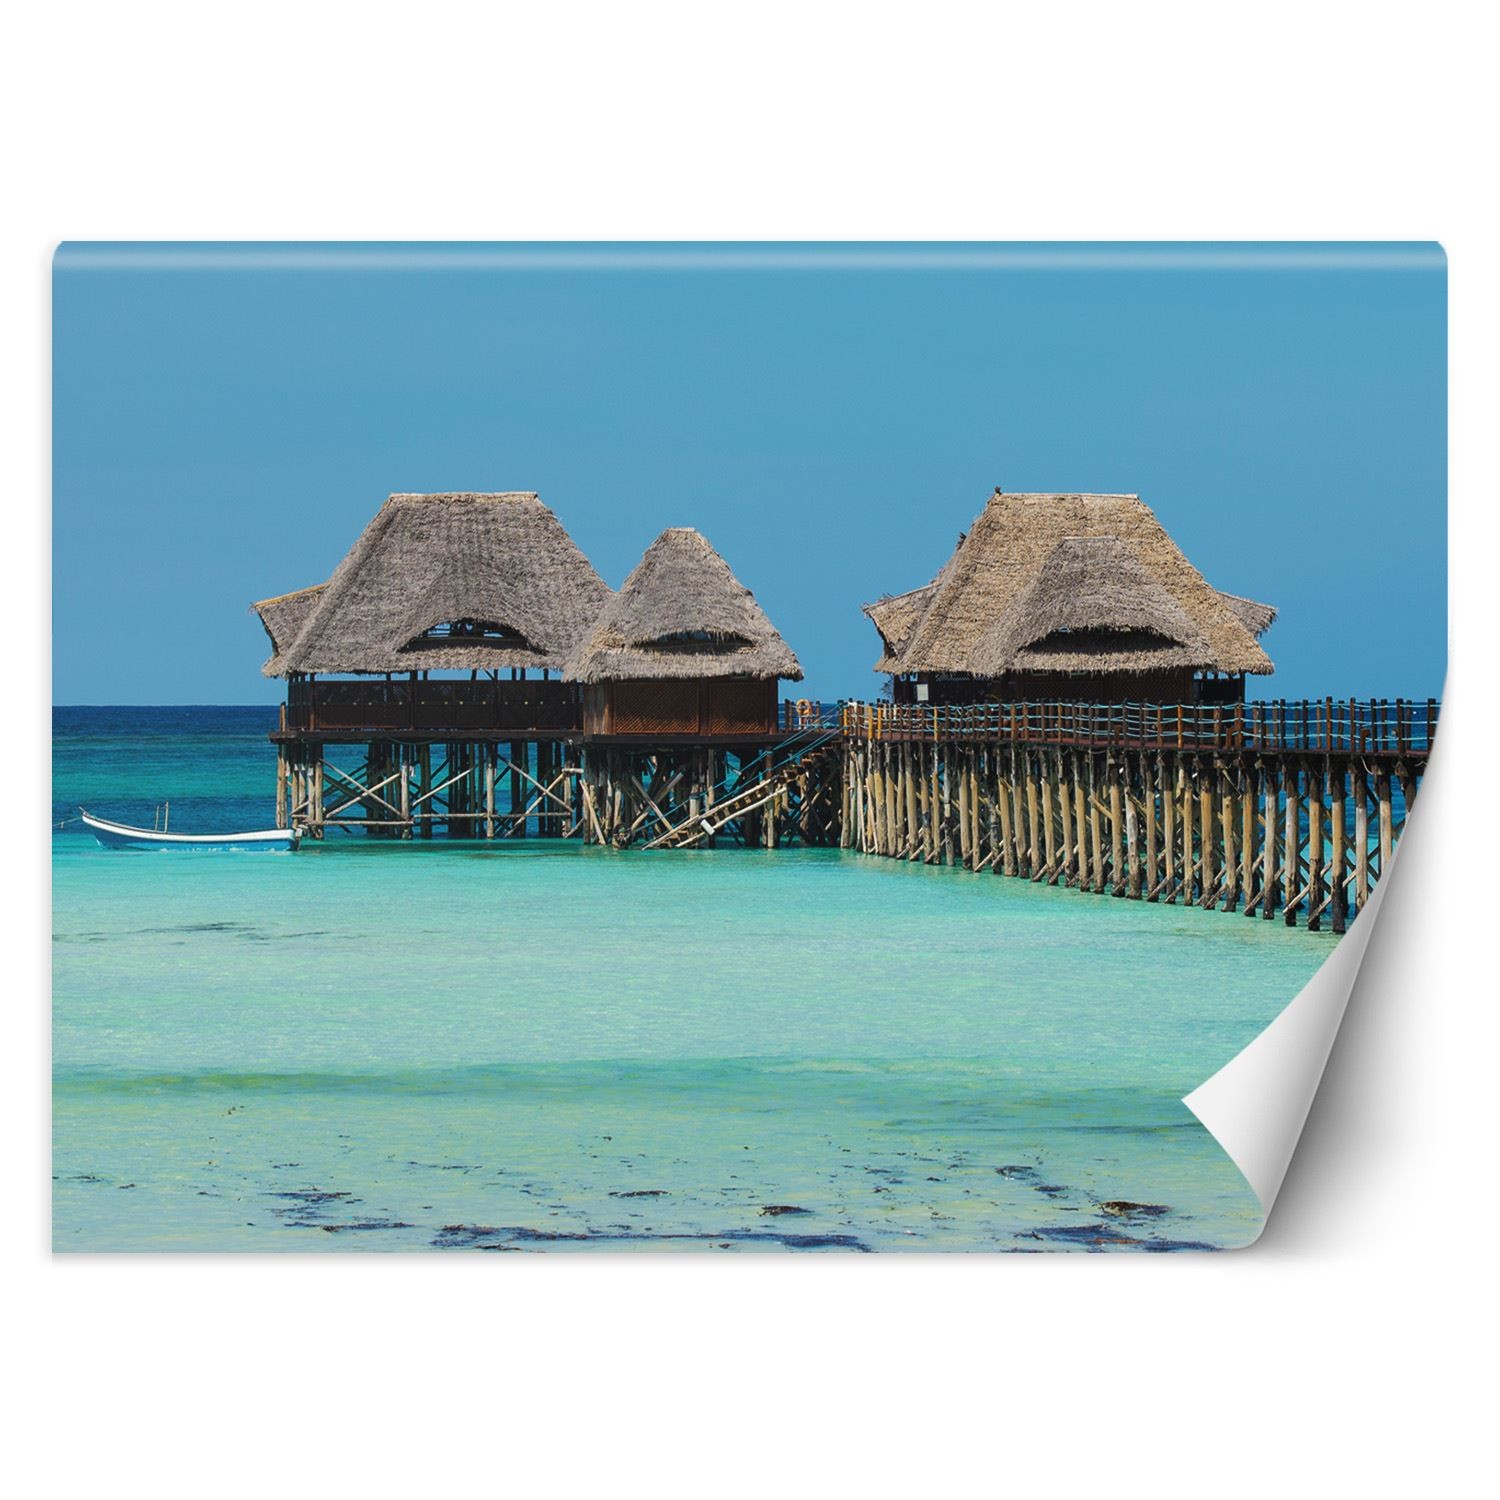 Trend24 – Behang – Malediven – Behangpapier – Fotobehang Natuur – Behang Woonkamer – 250x175x2 cm – Incl. behanglijm